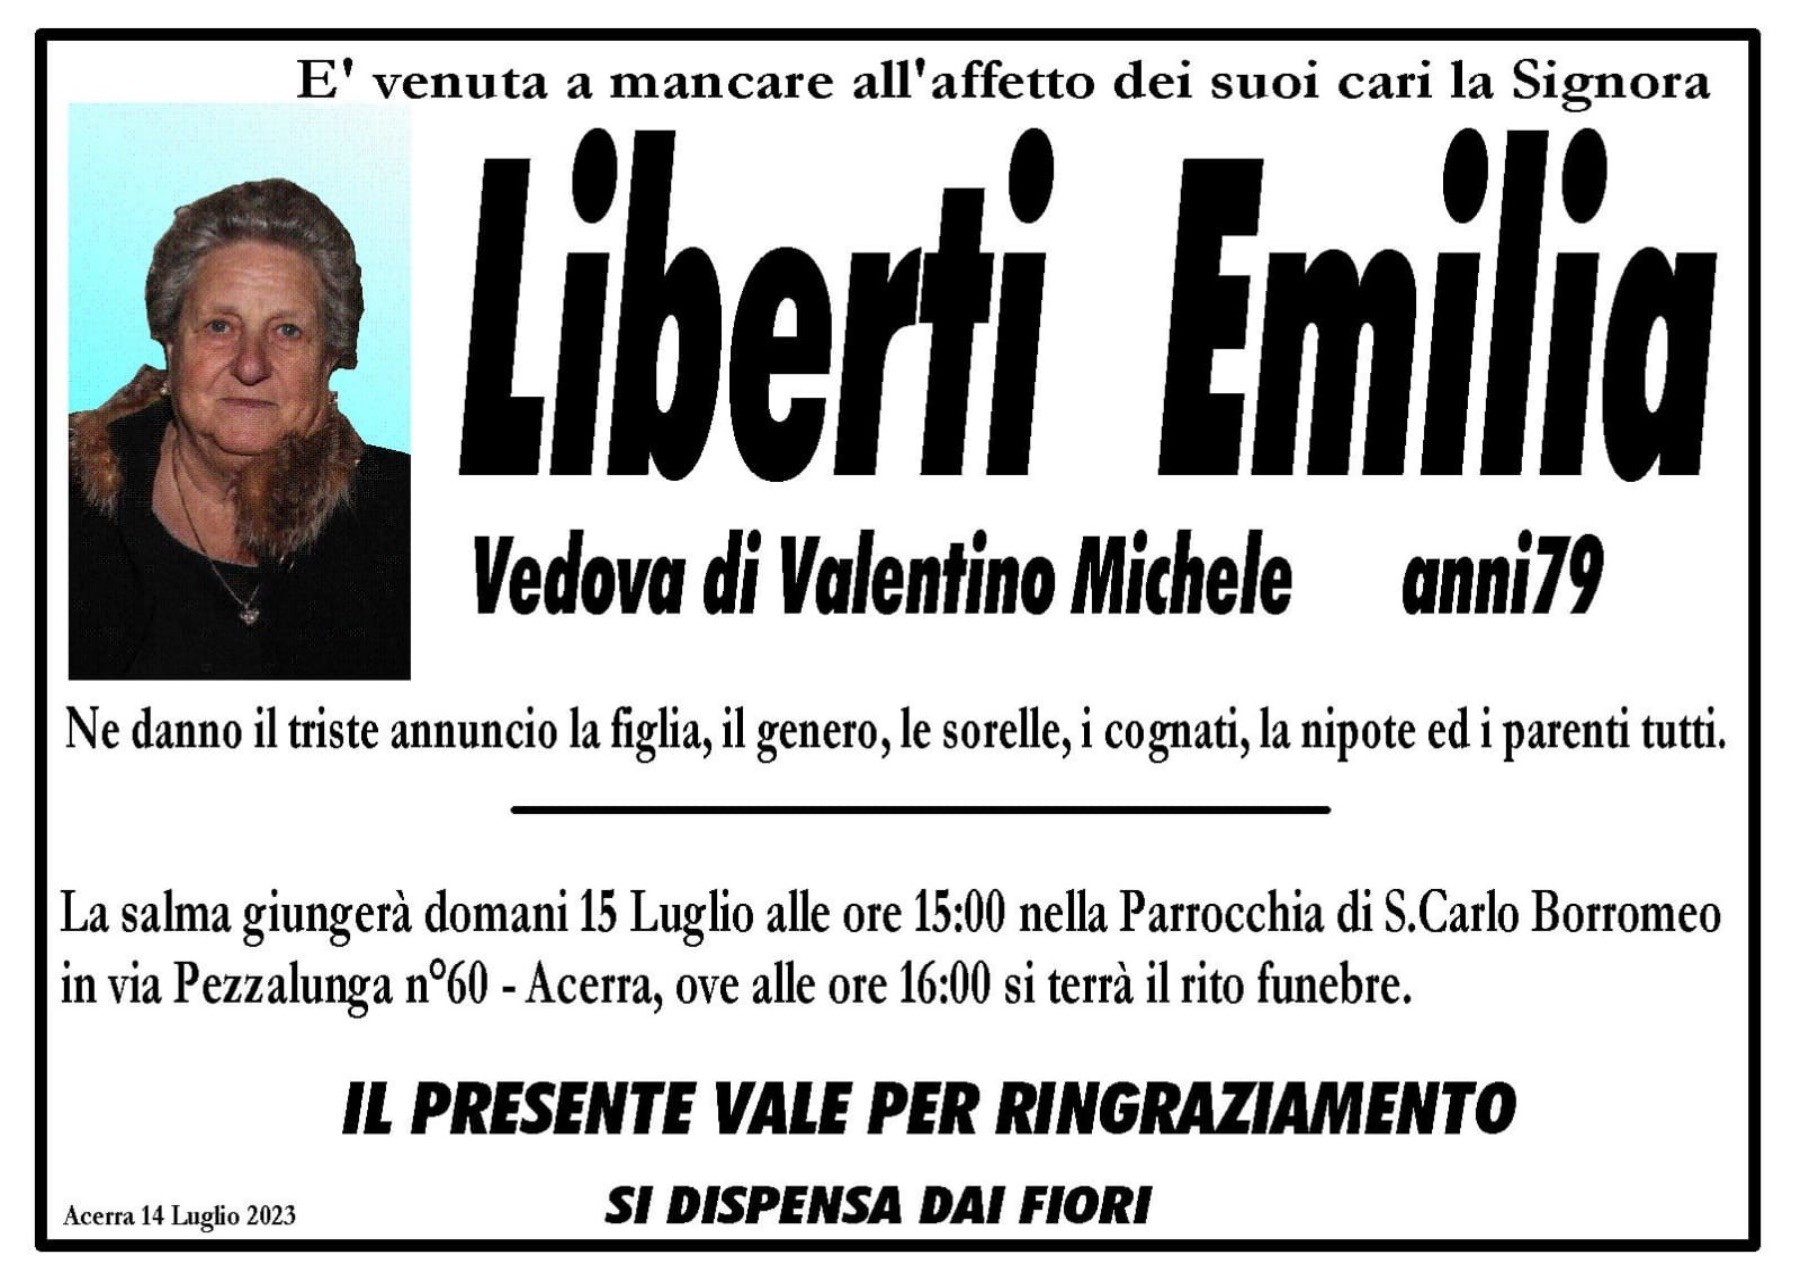 Emilia Liberti